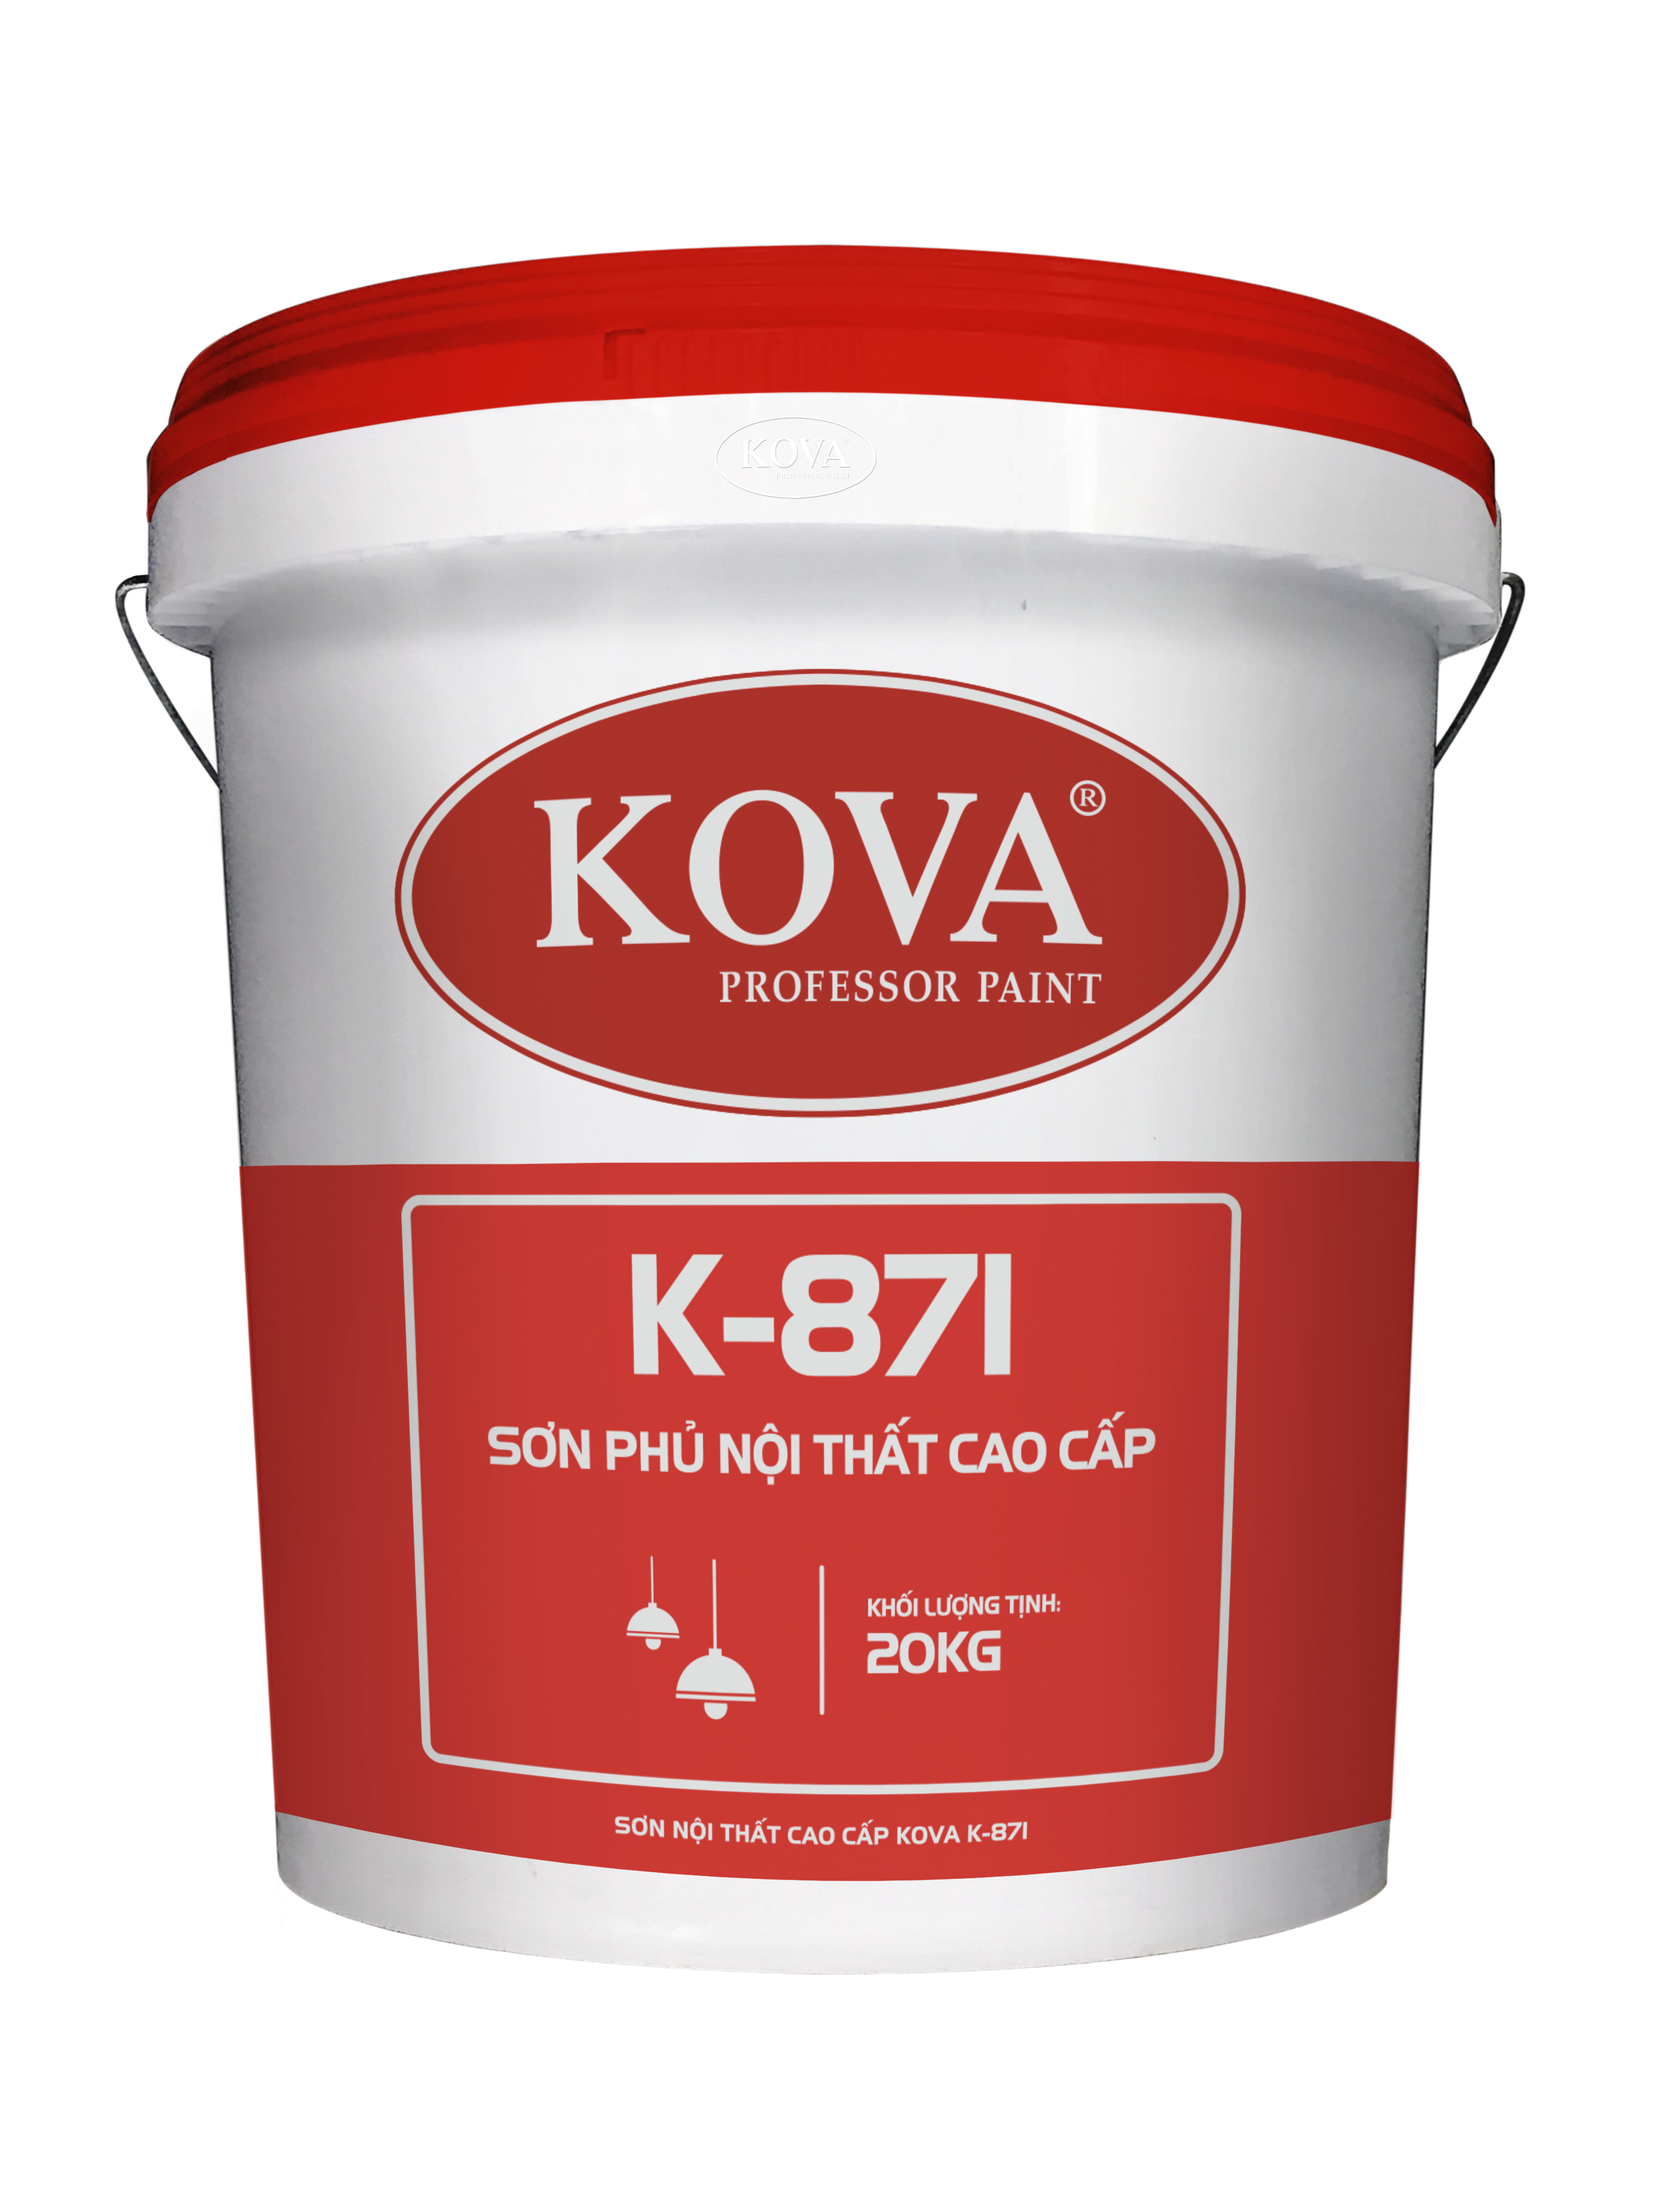 Sơn nội thất cao cấp KOVA K-871 là sự kết hợp tuyệt vời giữa chất lượng, độ bền và màu sắc đẹp mắt. Kiểm tra hình ảnh để tìm hiểu thêm về sản phẩm này và trang trí ngôi nhà của bạn trong phong cách hiện đại.